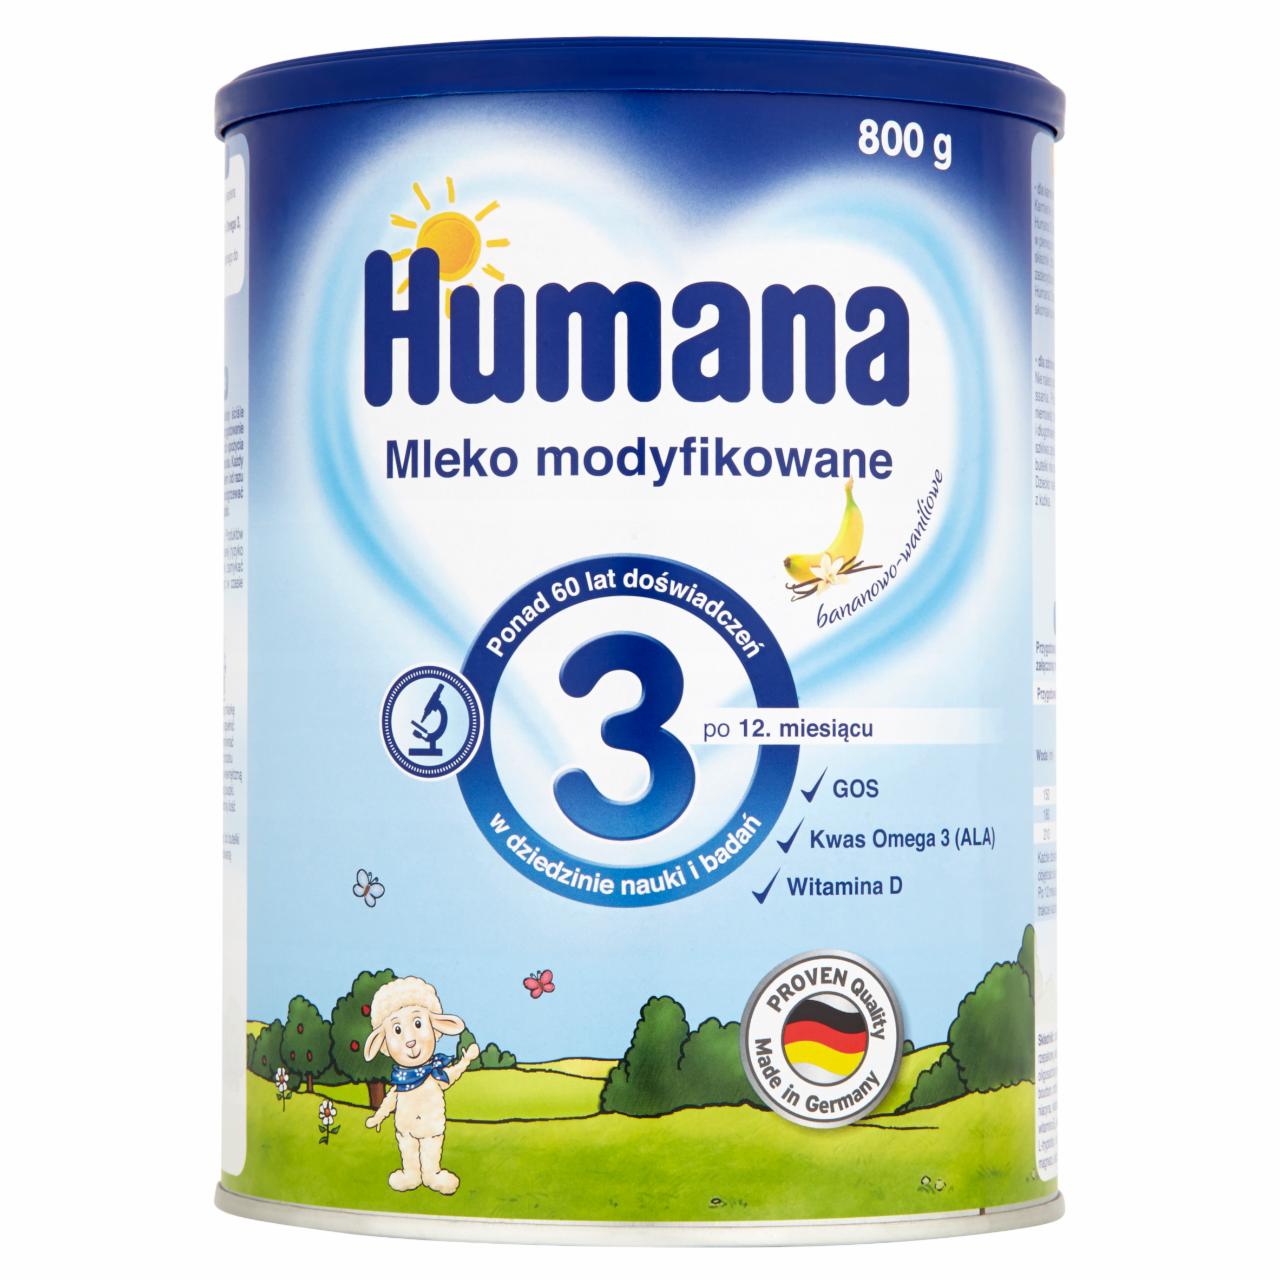 Zdjęcia - Humana 3 Mleko modyfikowane bananowo-waniliowe po 12. miesiącu 800 g